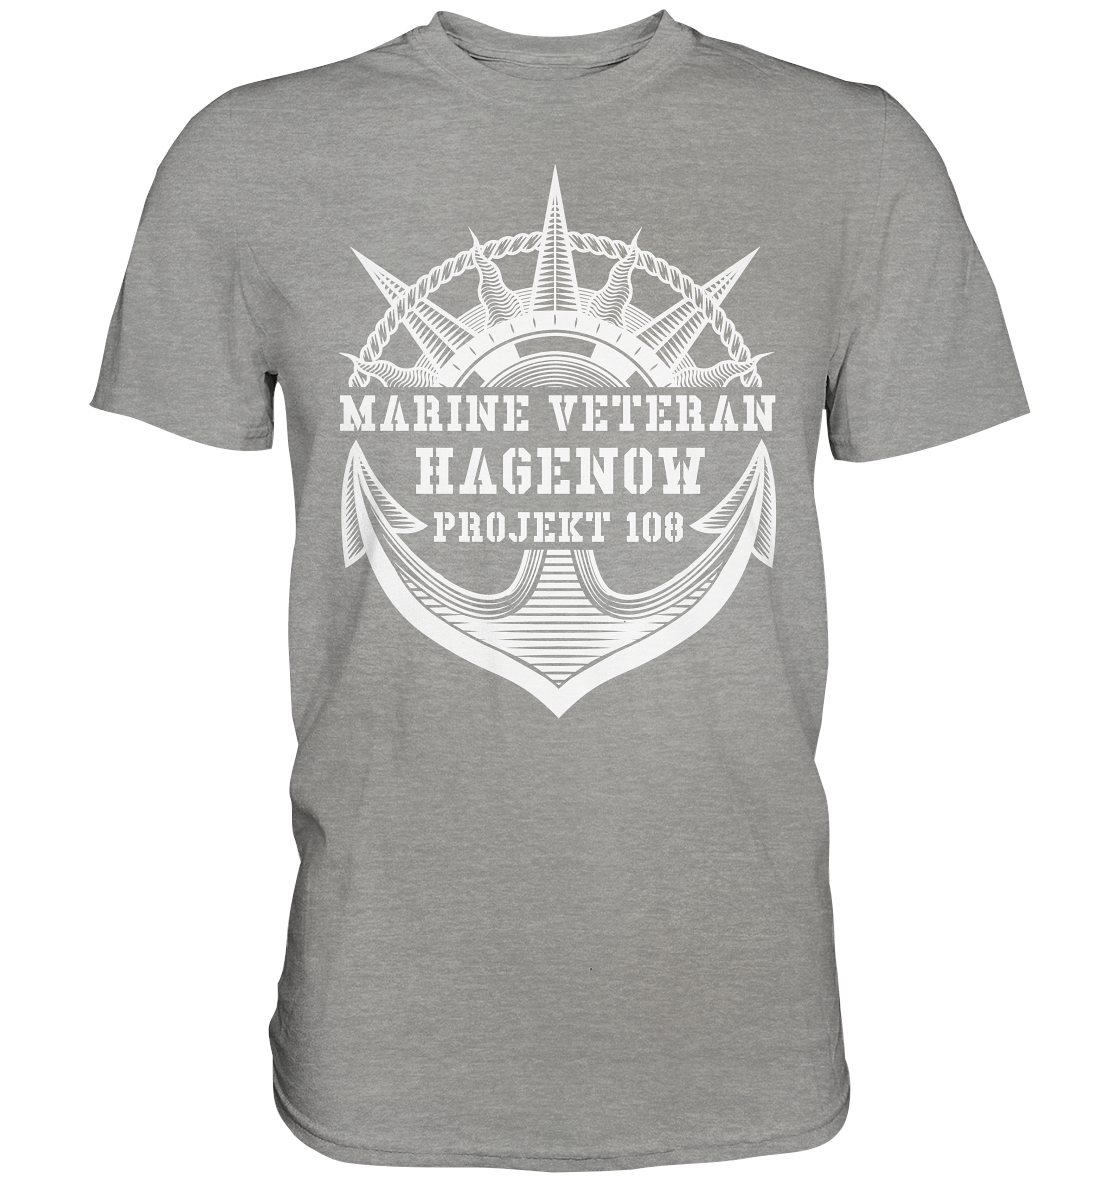 Projekt 108 HAGENOW Marine Veteran  - Premium Shirt